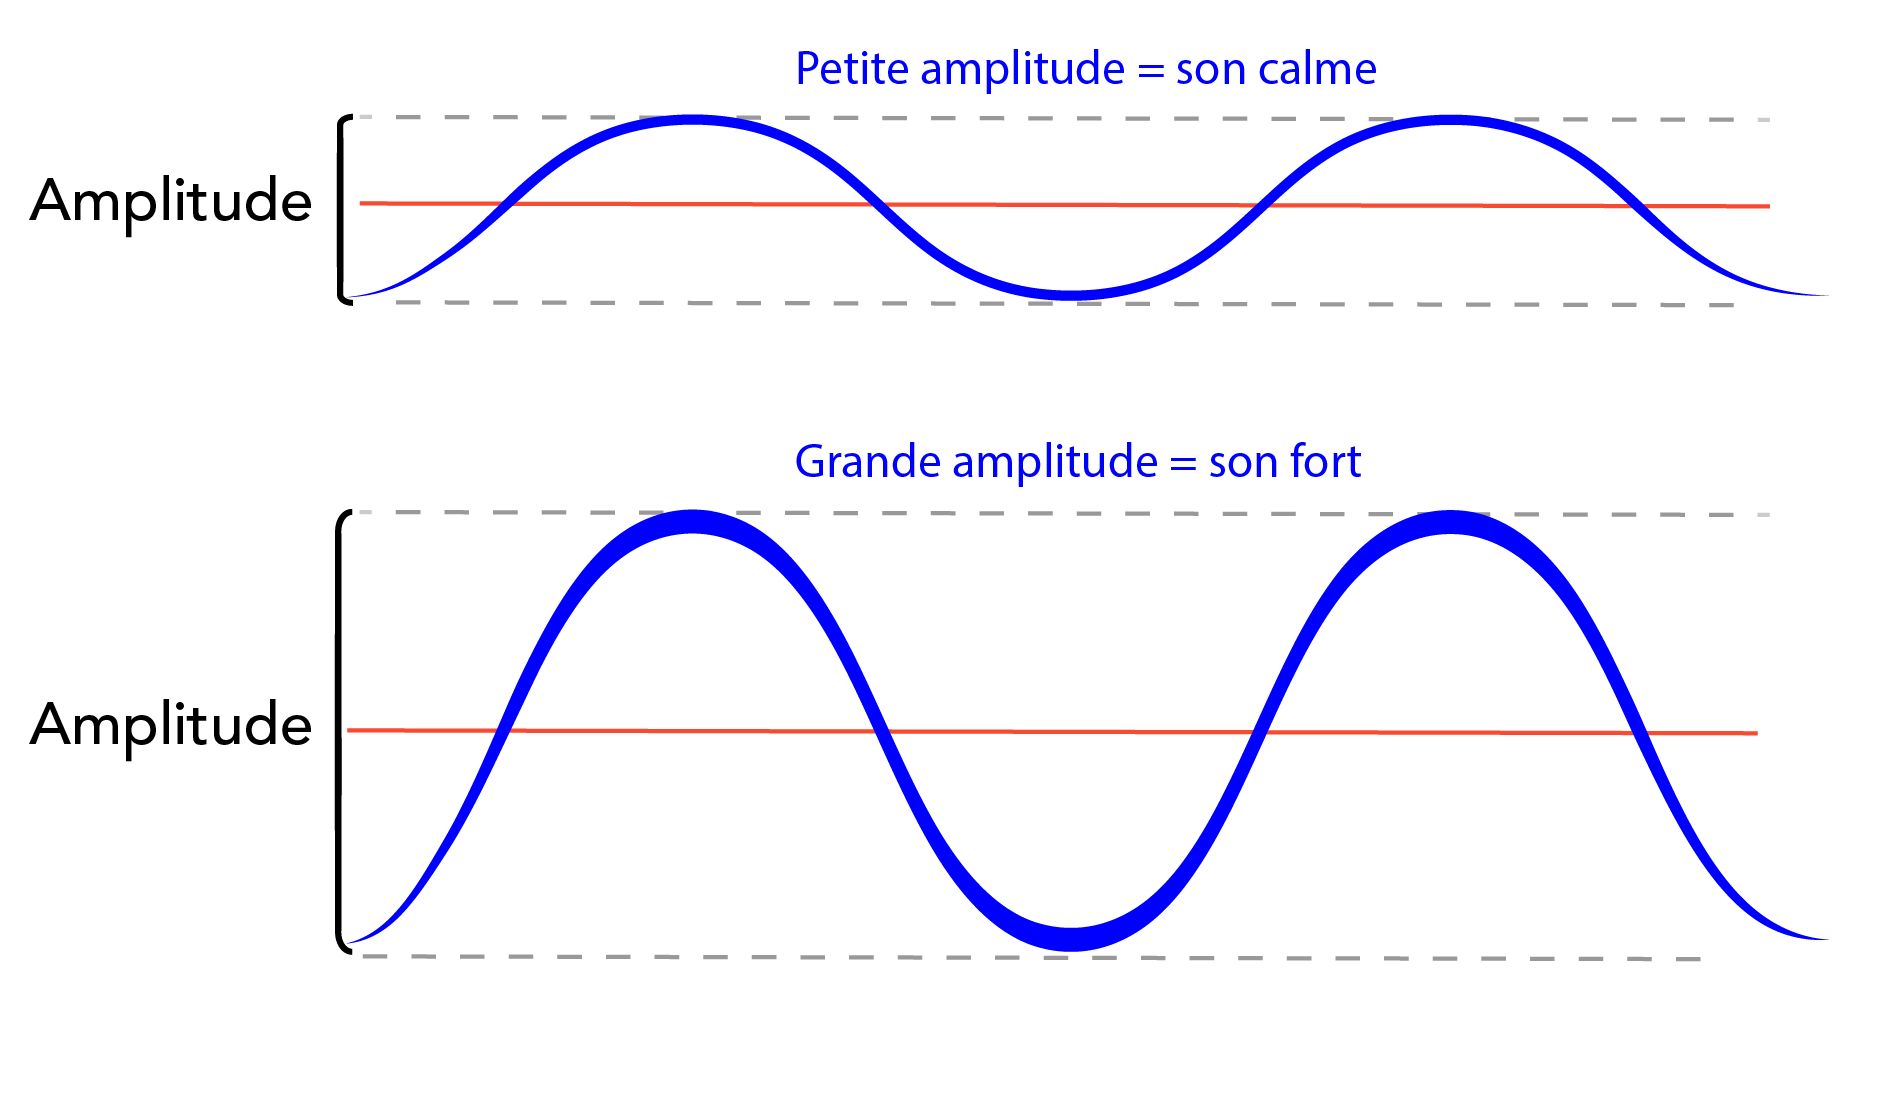 Les sons calmes ont de petites amplitudes comme le montre l’image du haut, et les sons forts ont de grandes amplitudes comme le montre l’image du bas